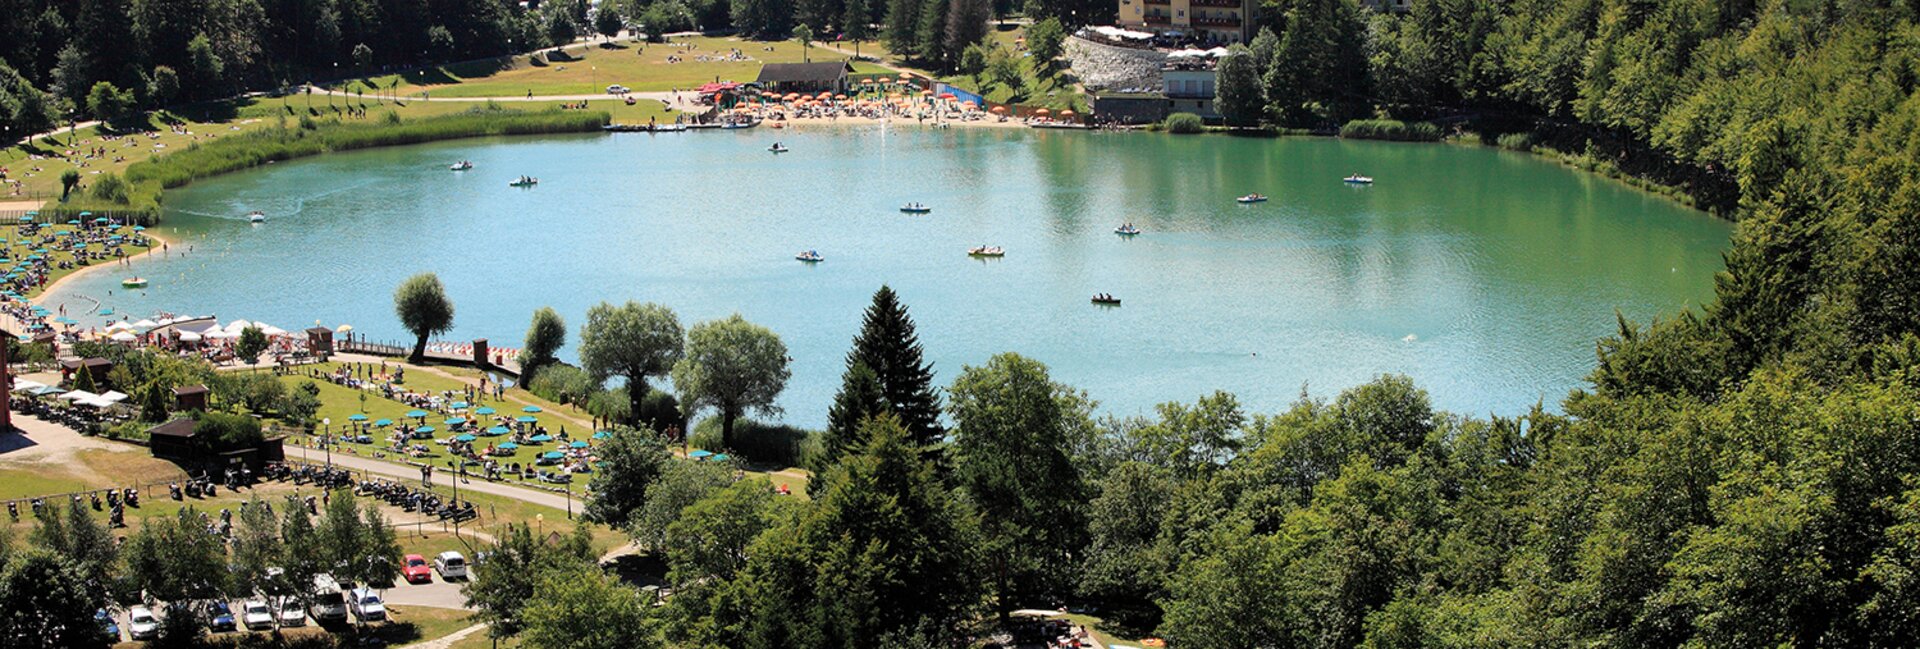 Lake Lavarone - On Freud’s footsteps